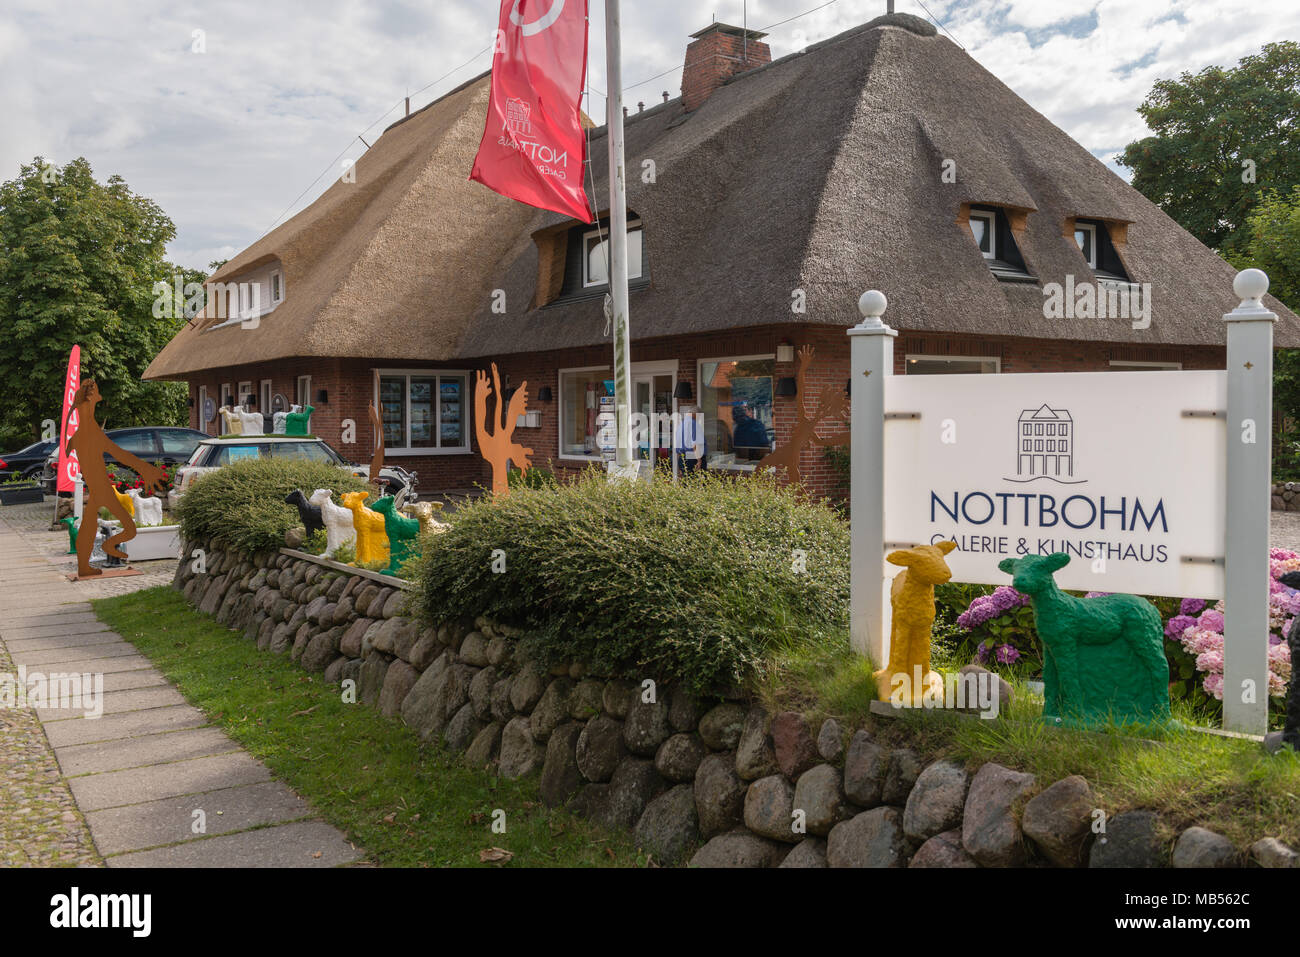 Traditionelle friesische Haus mit Reetdach, Keitum, Nordsee Insel Sylt, Schleswig-Holstein, Deutschland, Europa Stockfoto